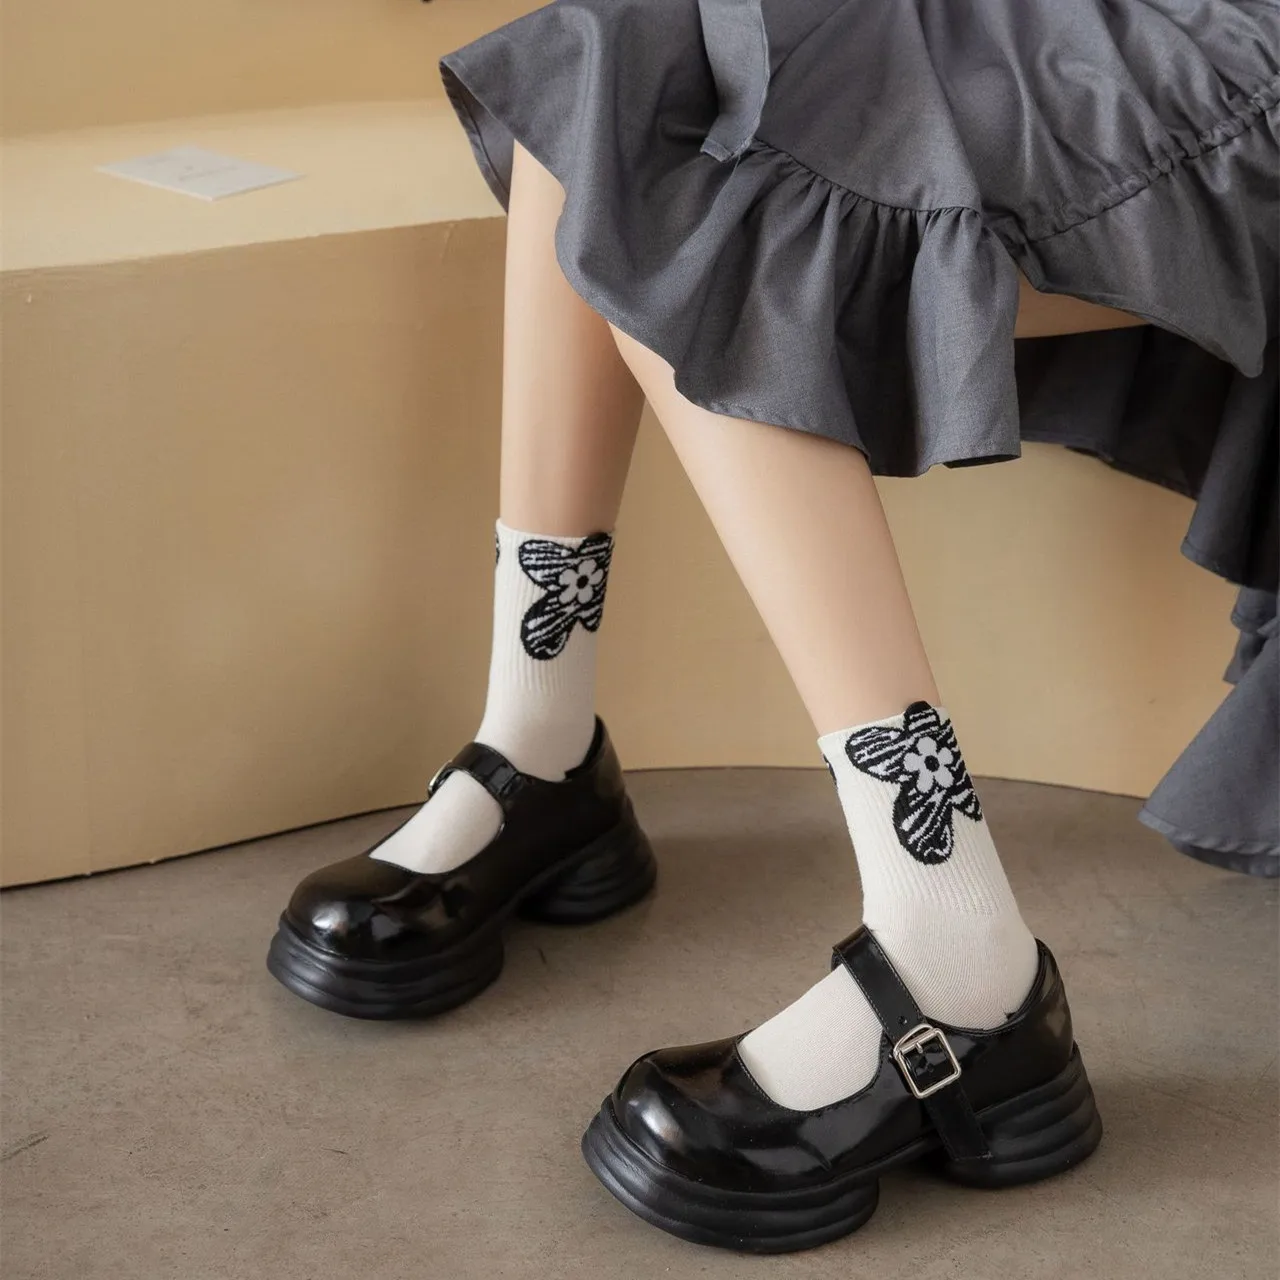 Svakodnevne Crno-Bijele Čarape Ženske Čarape S Cartoonish Po Cijeloj Površini Životinja, Japanski Slatka Čarape Kawaii, Modni Šarene Čarape U Stilu Харадзюку, Vanjska Odjeća, Duge Čarape Slika 3